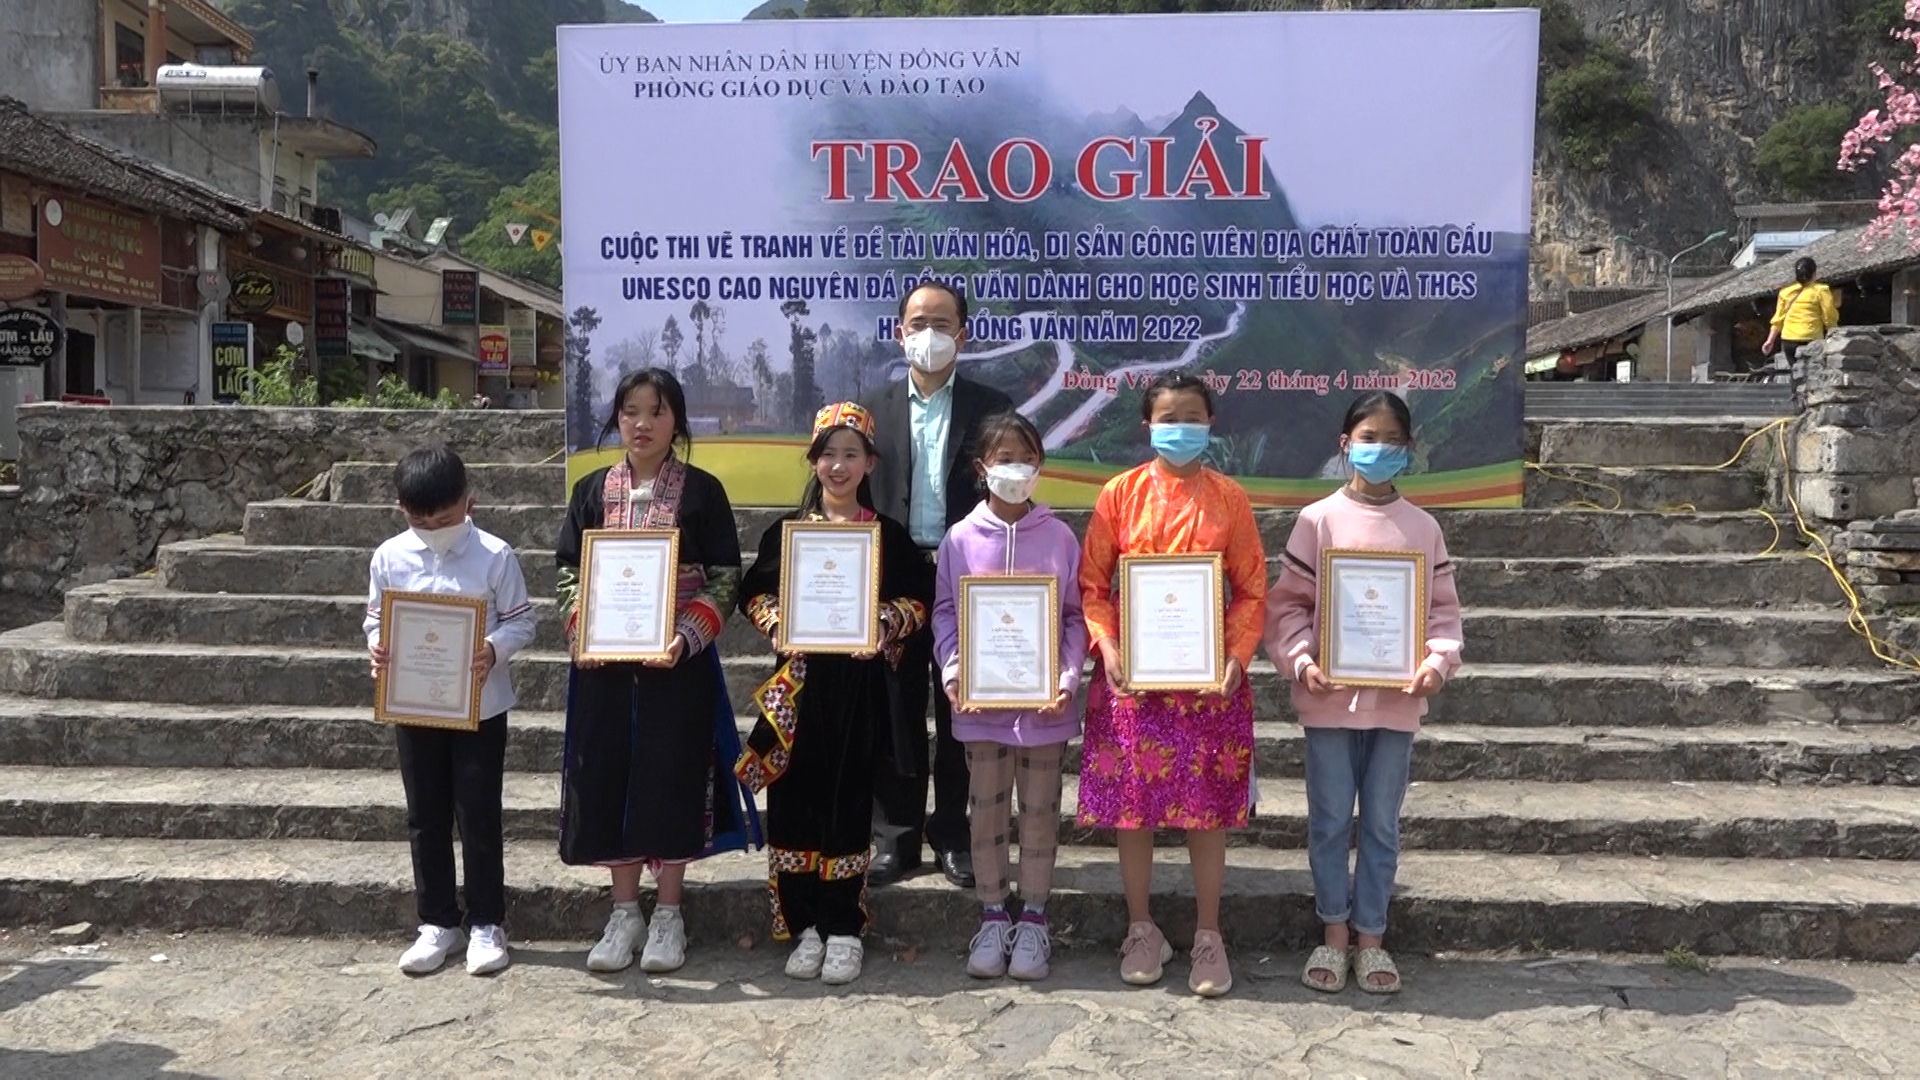 Trao giải Cuộc thi vẽ tranh về Đề tài văn hóa, di sản Công viên địa chất toàn cầu UNESCO Cao nguyên đá Đồng Văn dành cho học sinh Tiểu học và THCS huyện Đồng Văn